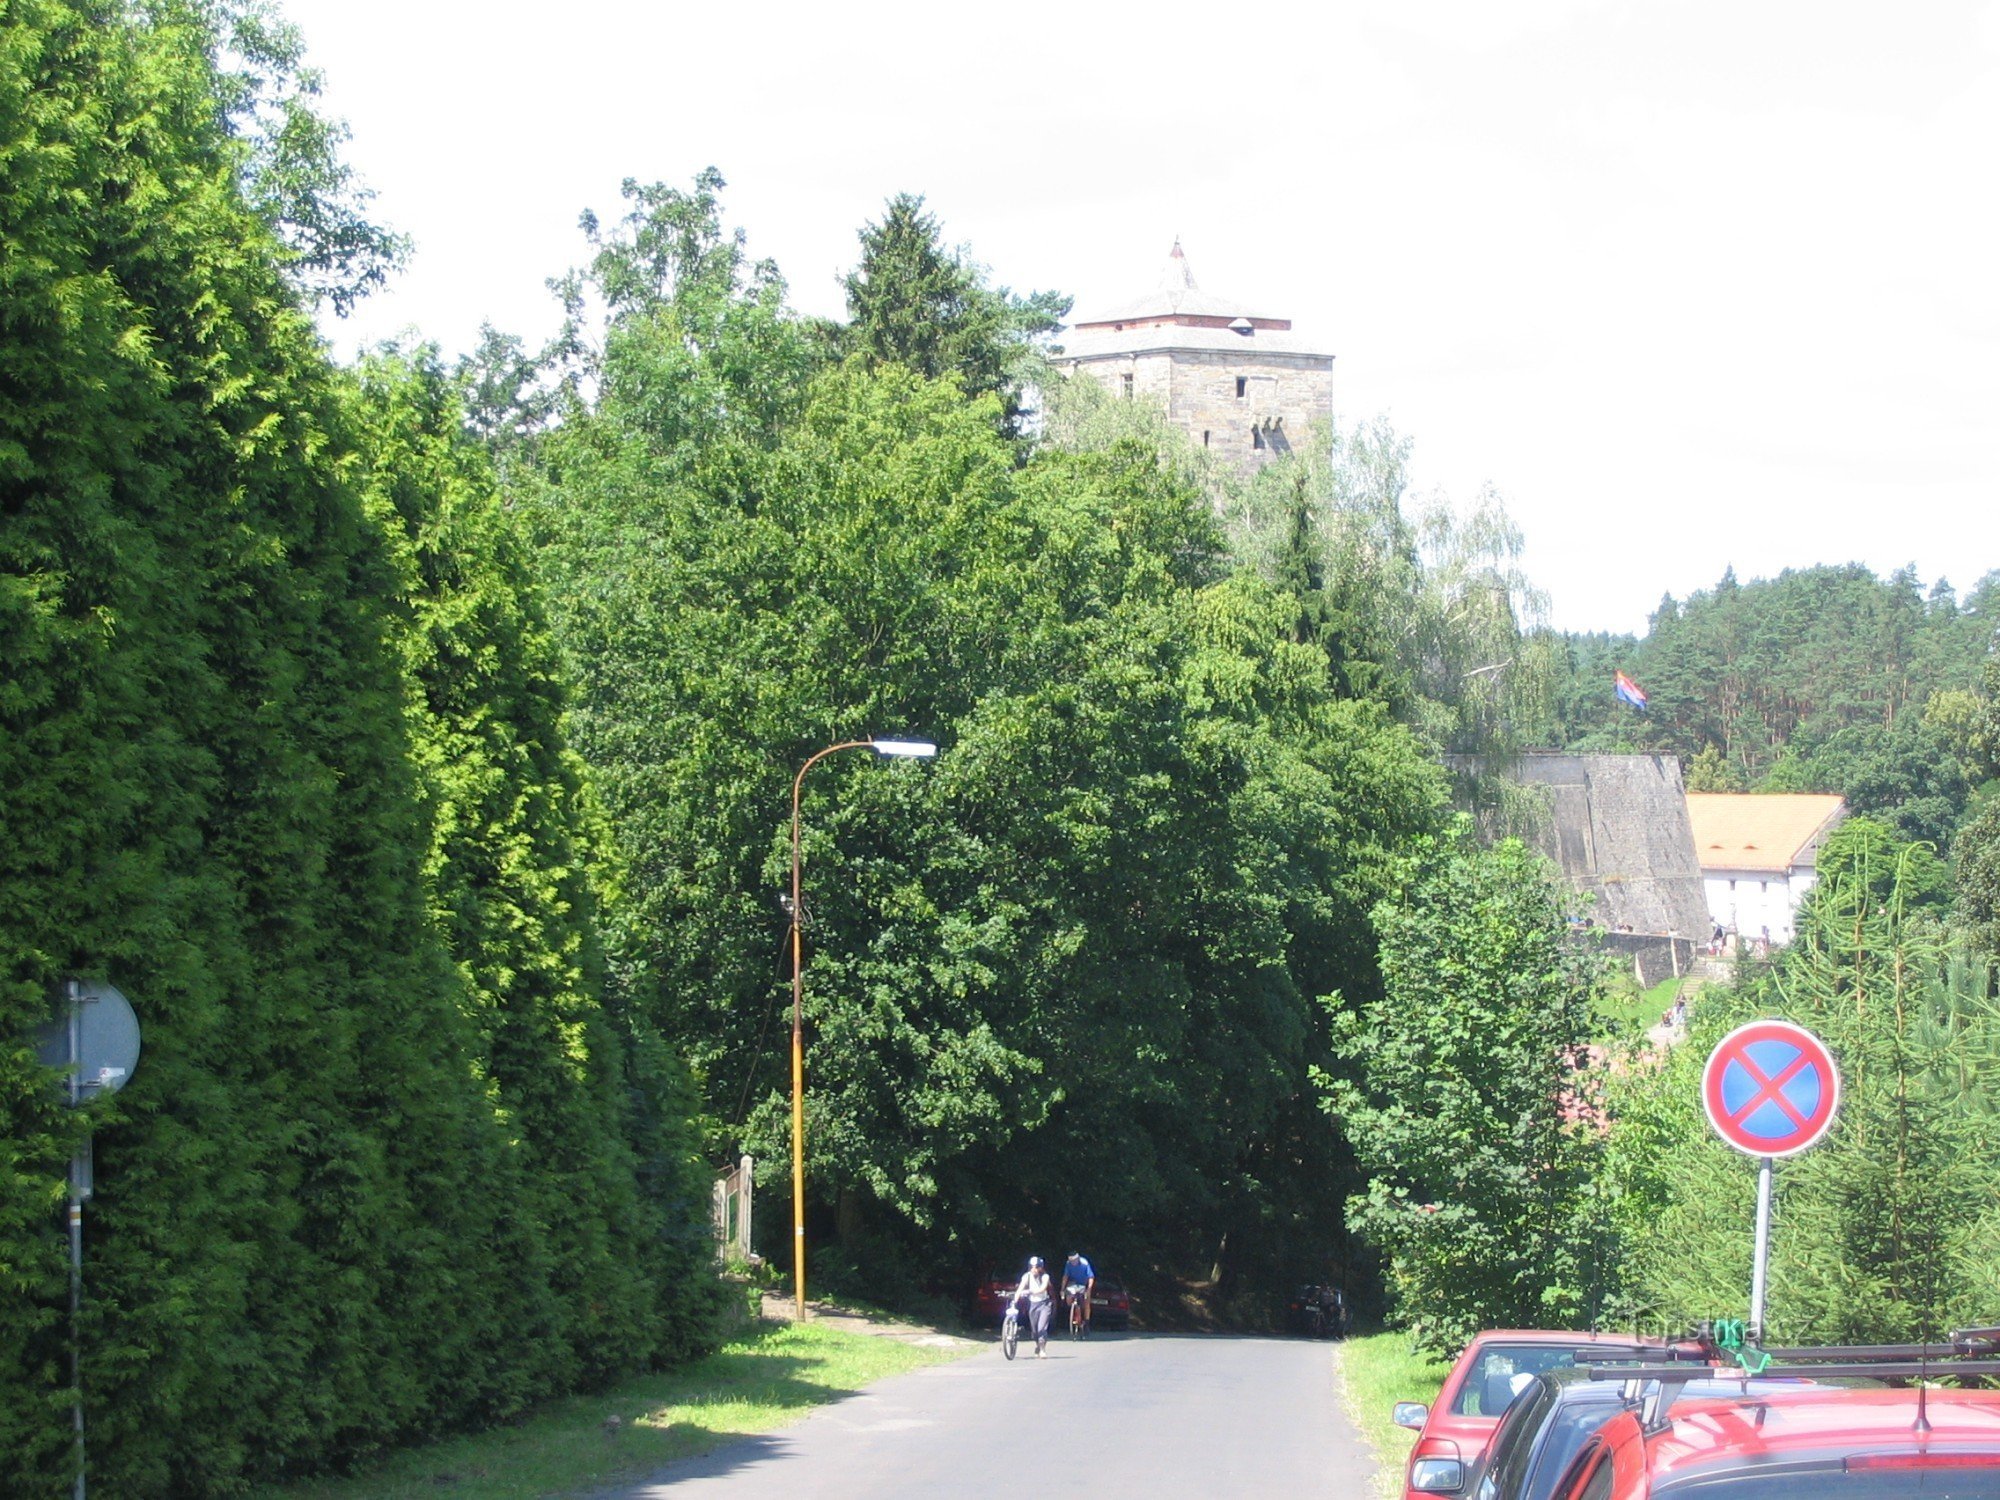 Kost è il primo castello che veniamo dalla collina.